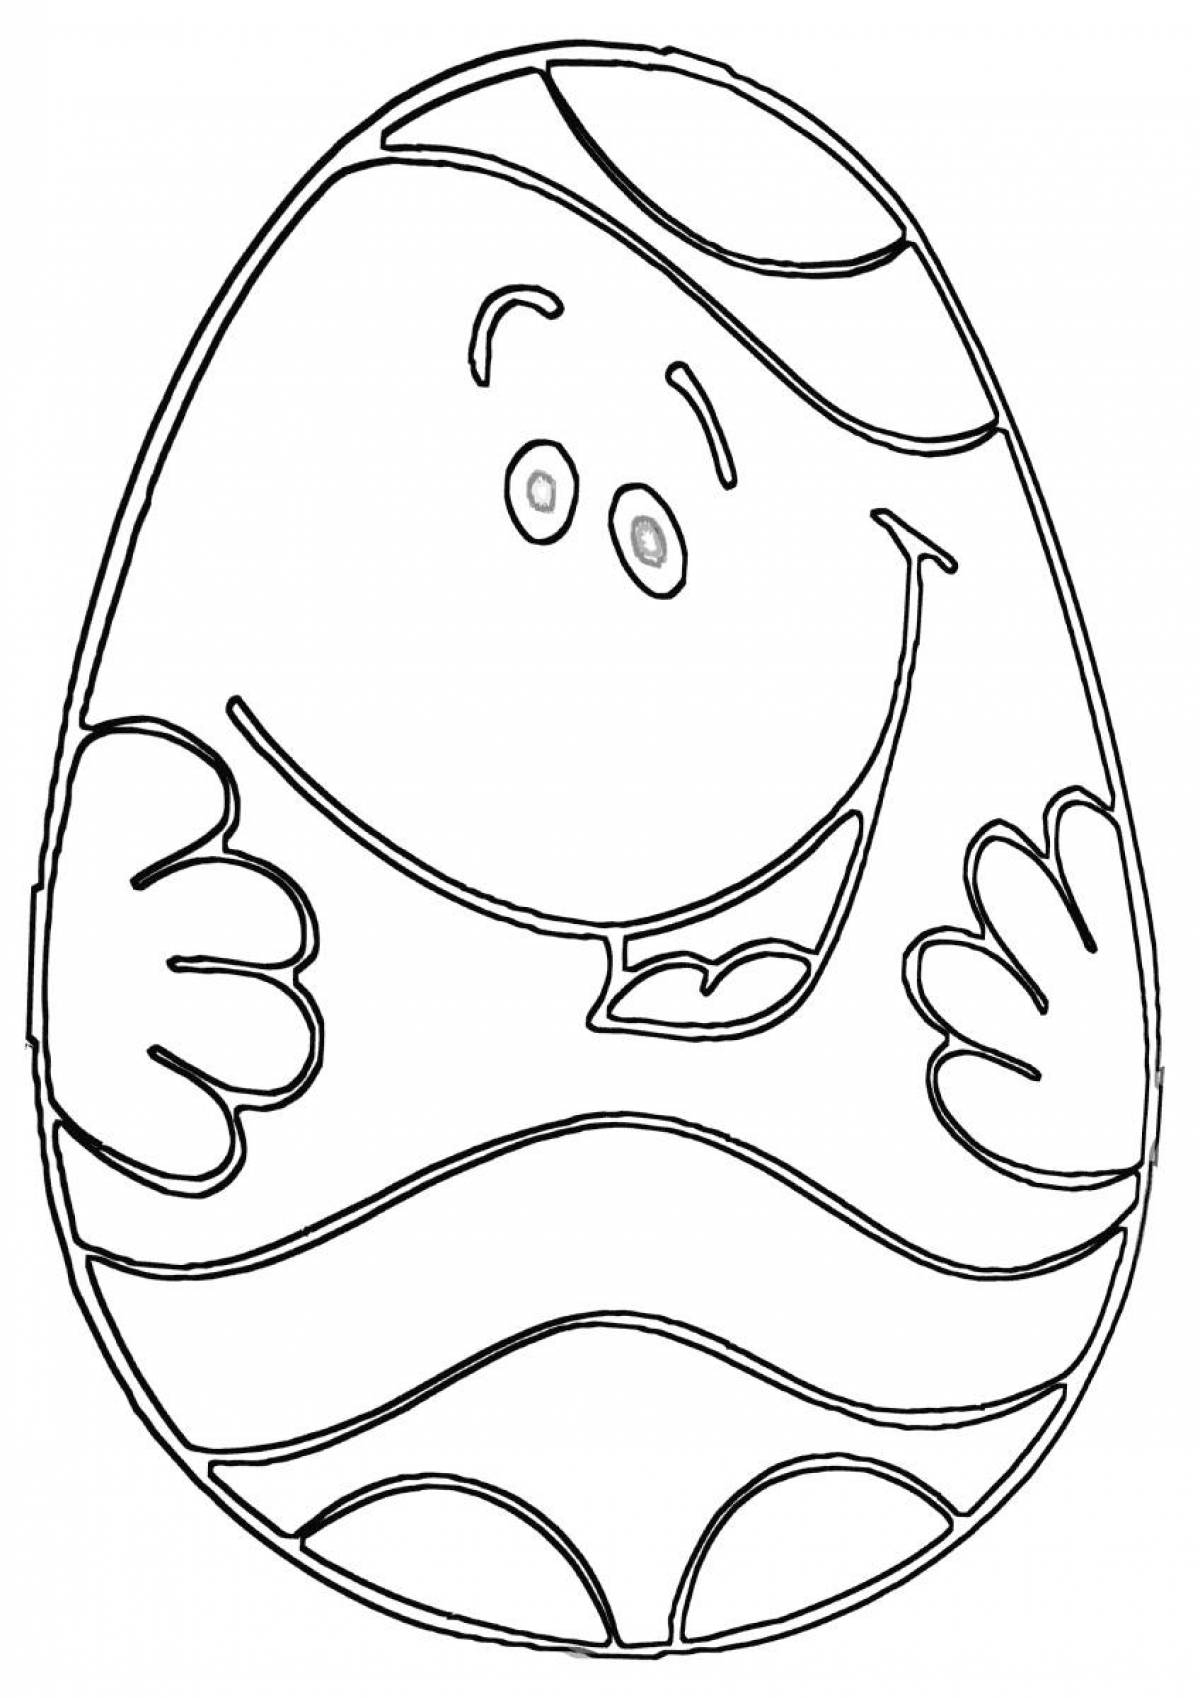 Киндер распечатать. Раскраска Киндер сюрприз. Киндер яйцо раскраска. Раскрвскакиндерс сюрприз. Шаблон яйца для раскрашивания для детей.